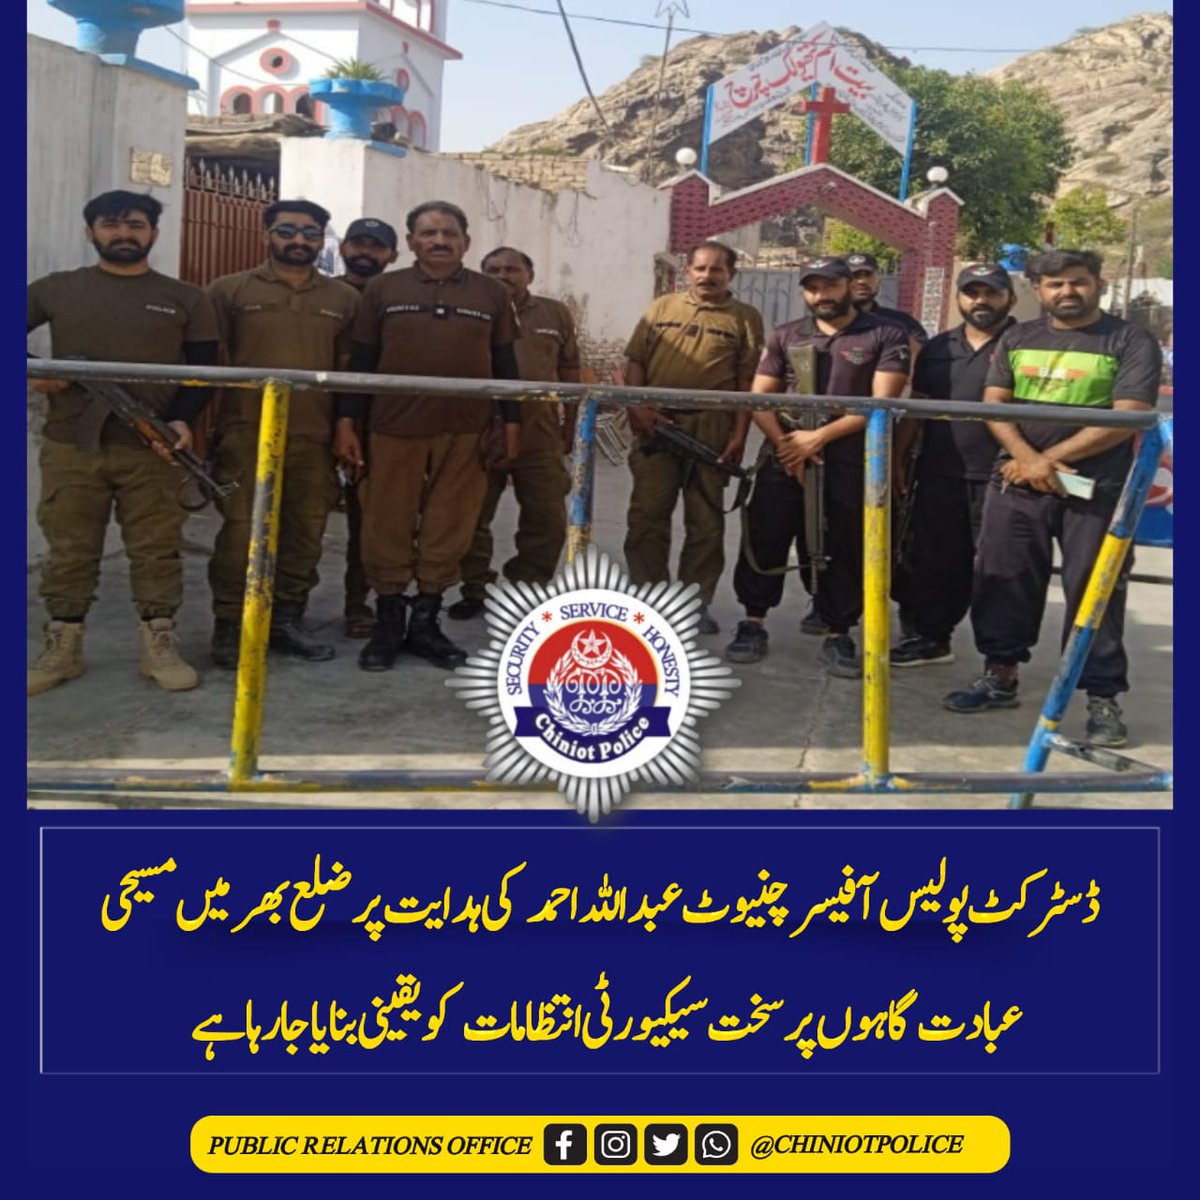 آپ کی حفاظت   ہماری عبادت

ضلع  بھر میں چرچ ہائے پر سخت سیکیورٹی انتظامات کو یقینی بنایا جا رہا ہے 
#PunjabPolice #ChiniotPolice #AtYourService